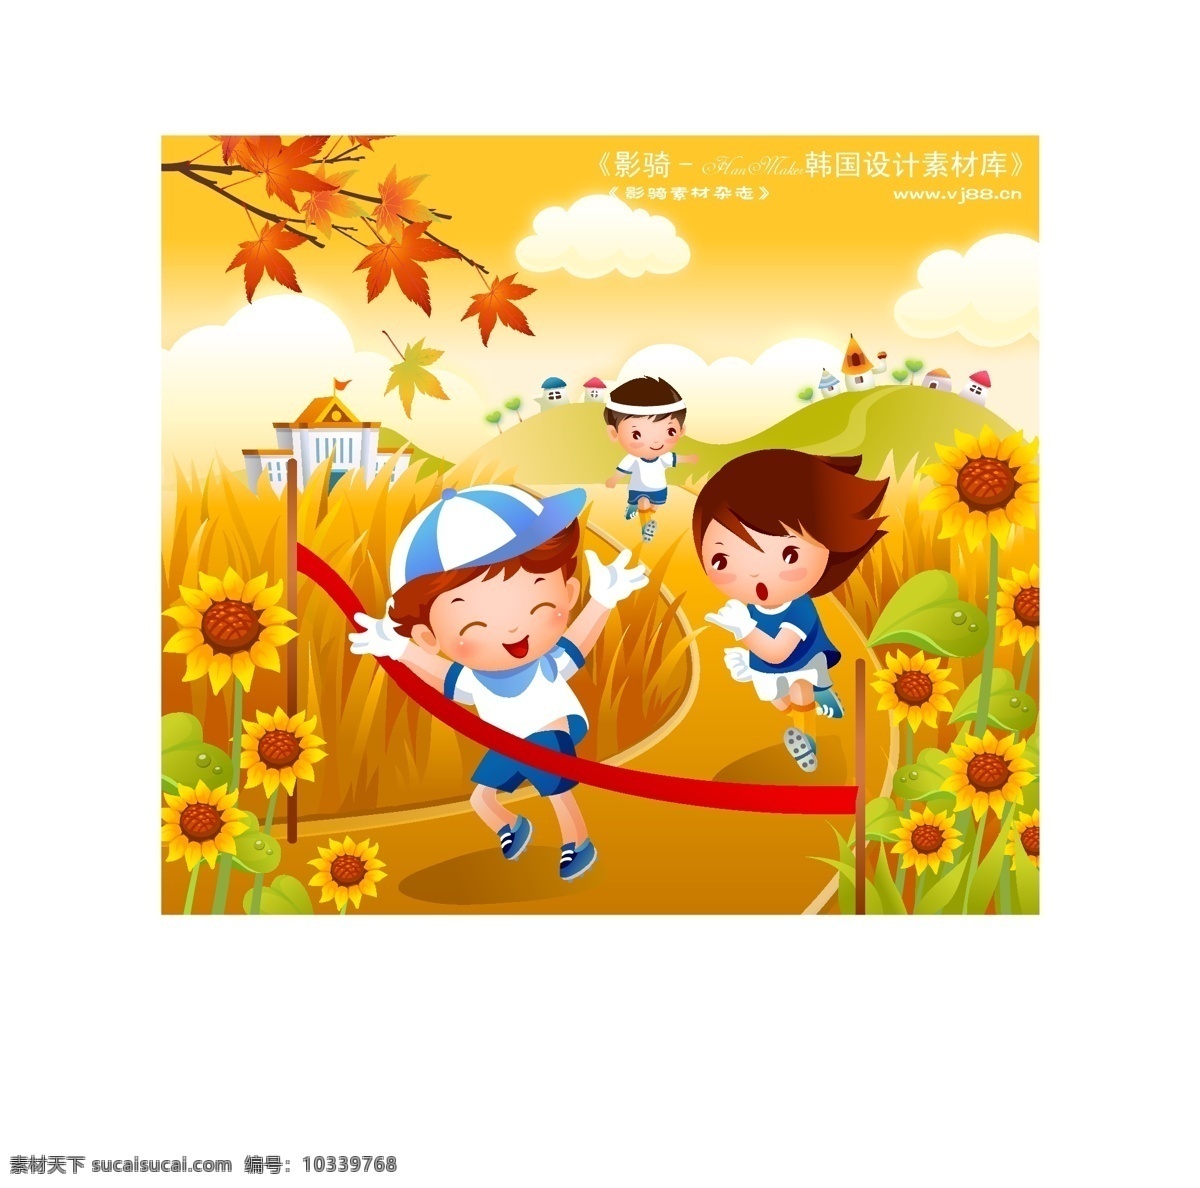 儿童运动会 卡通人物 矢量 ai0368 设计素材 漫画儿童 矢量图库 黄色